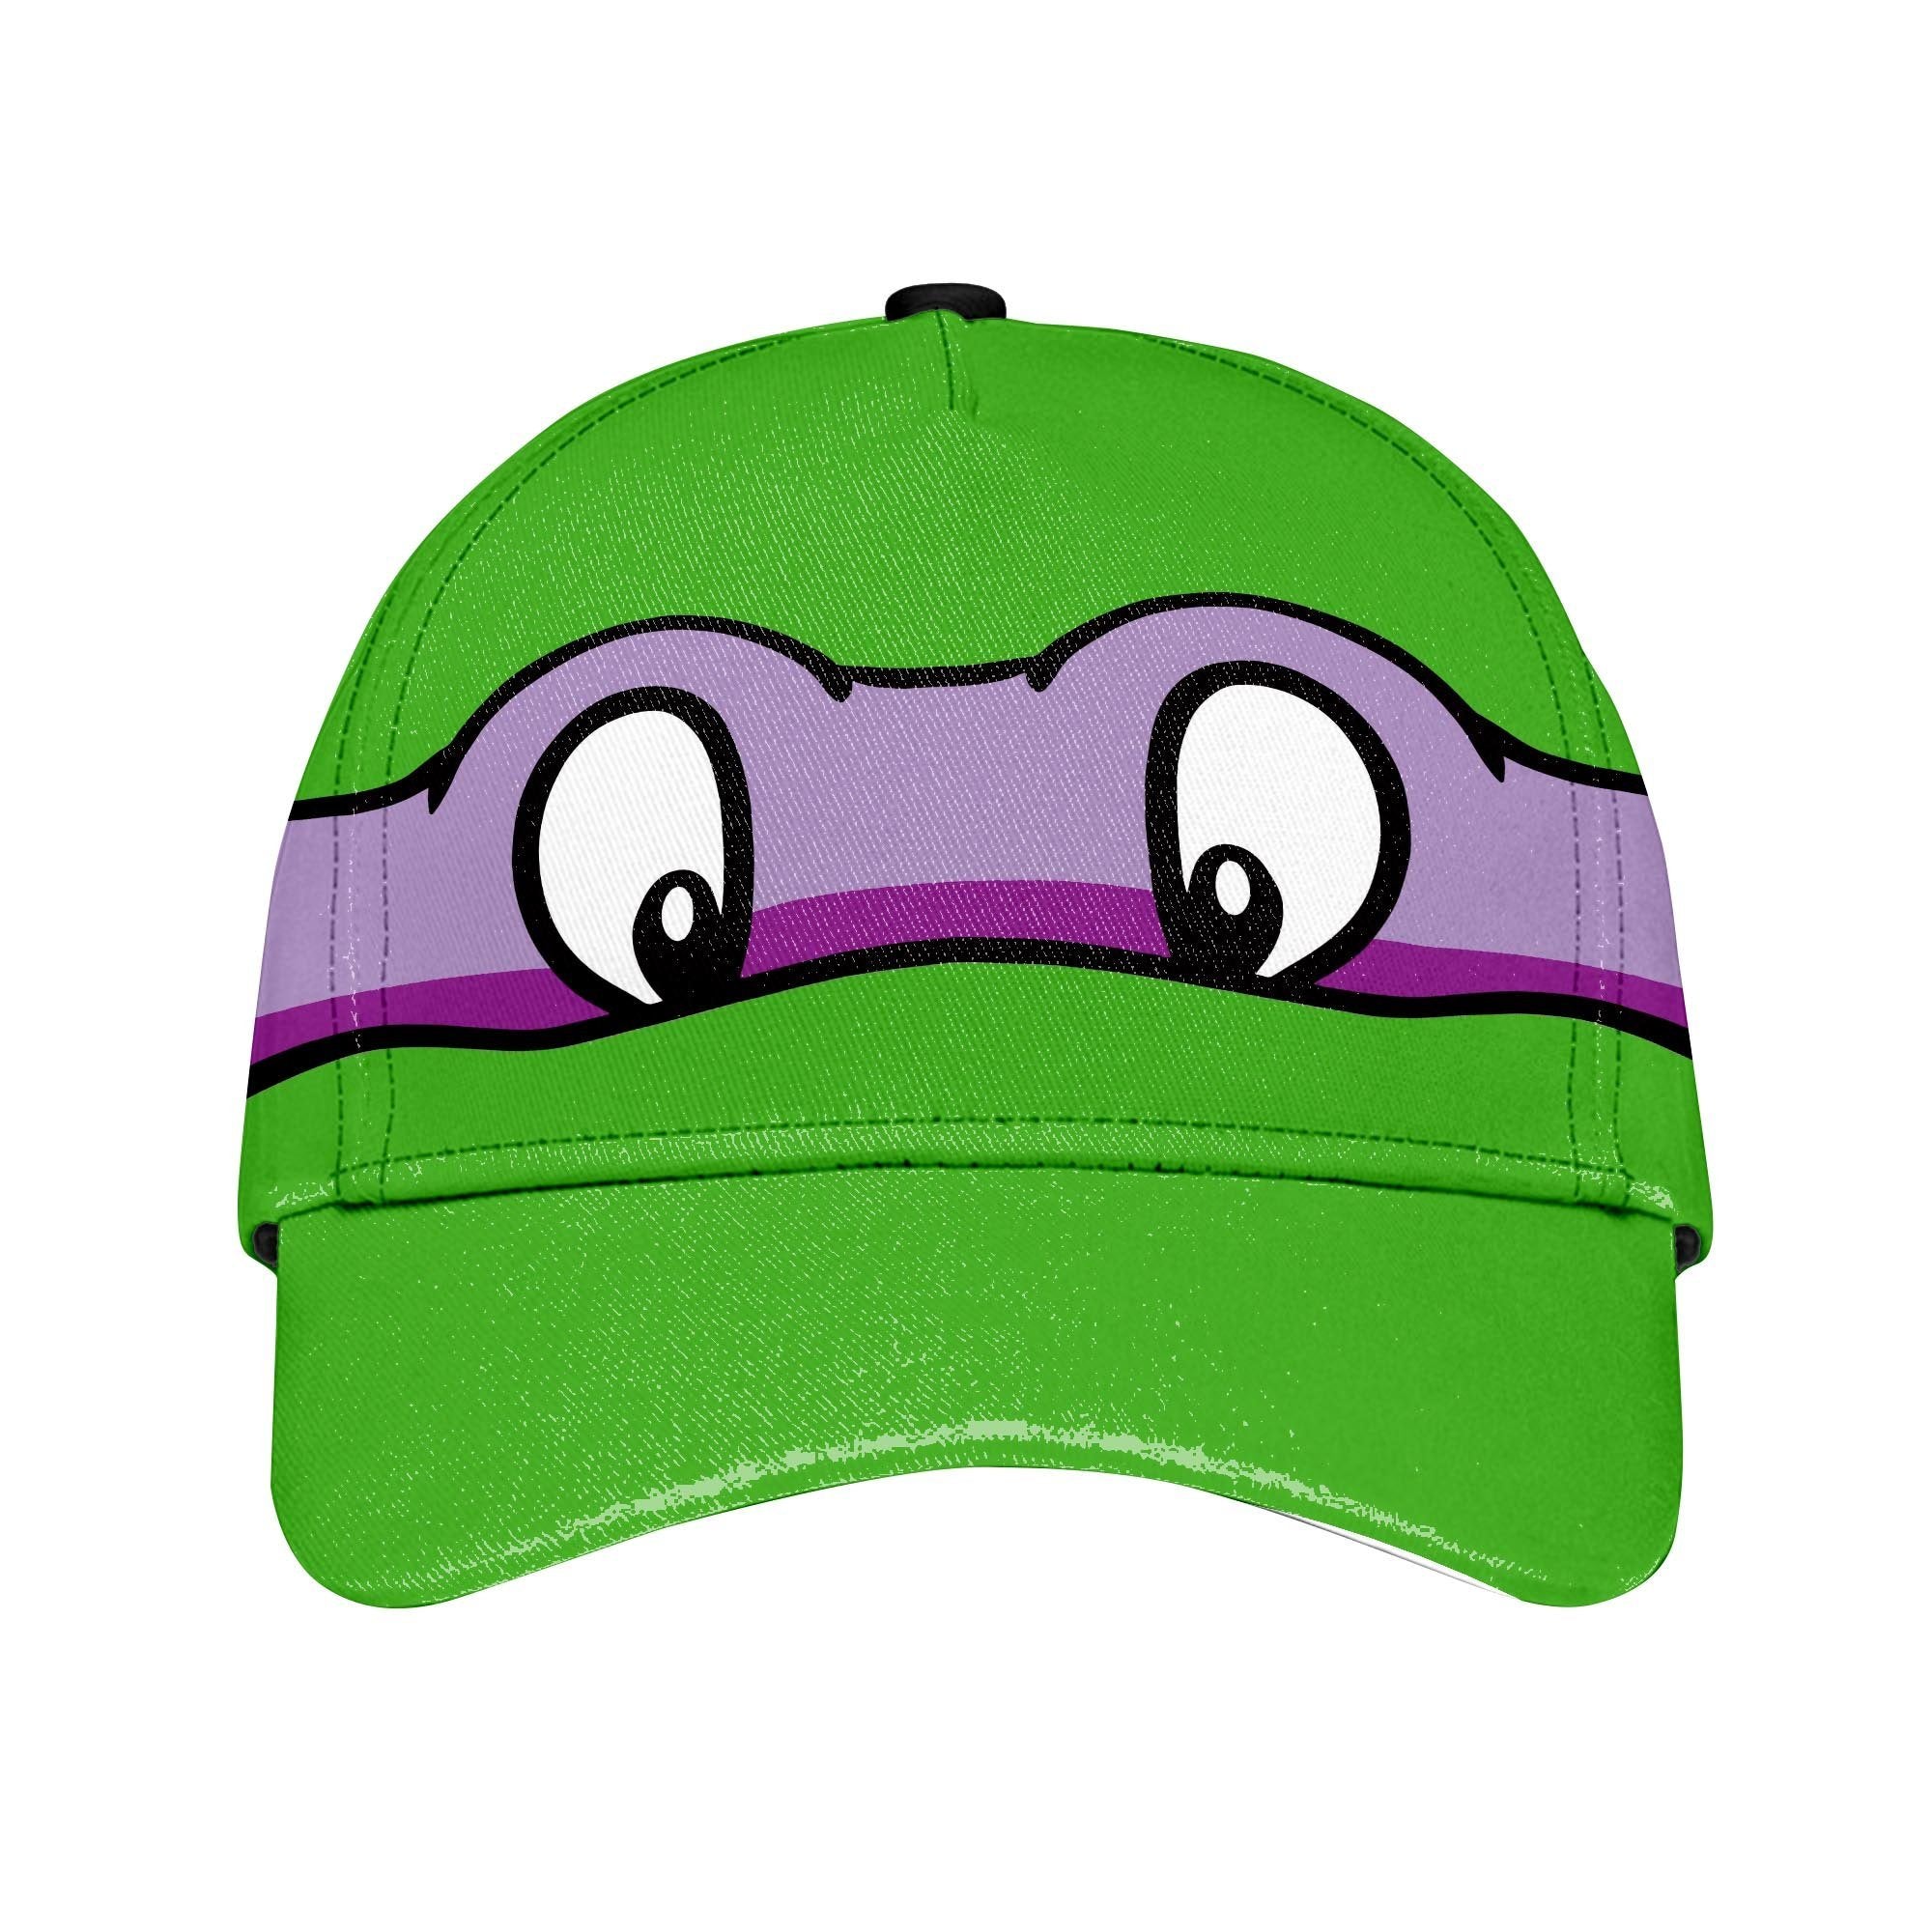 Donatello TMNT Custom Name Classic Cap